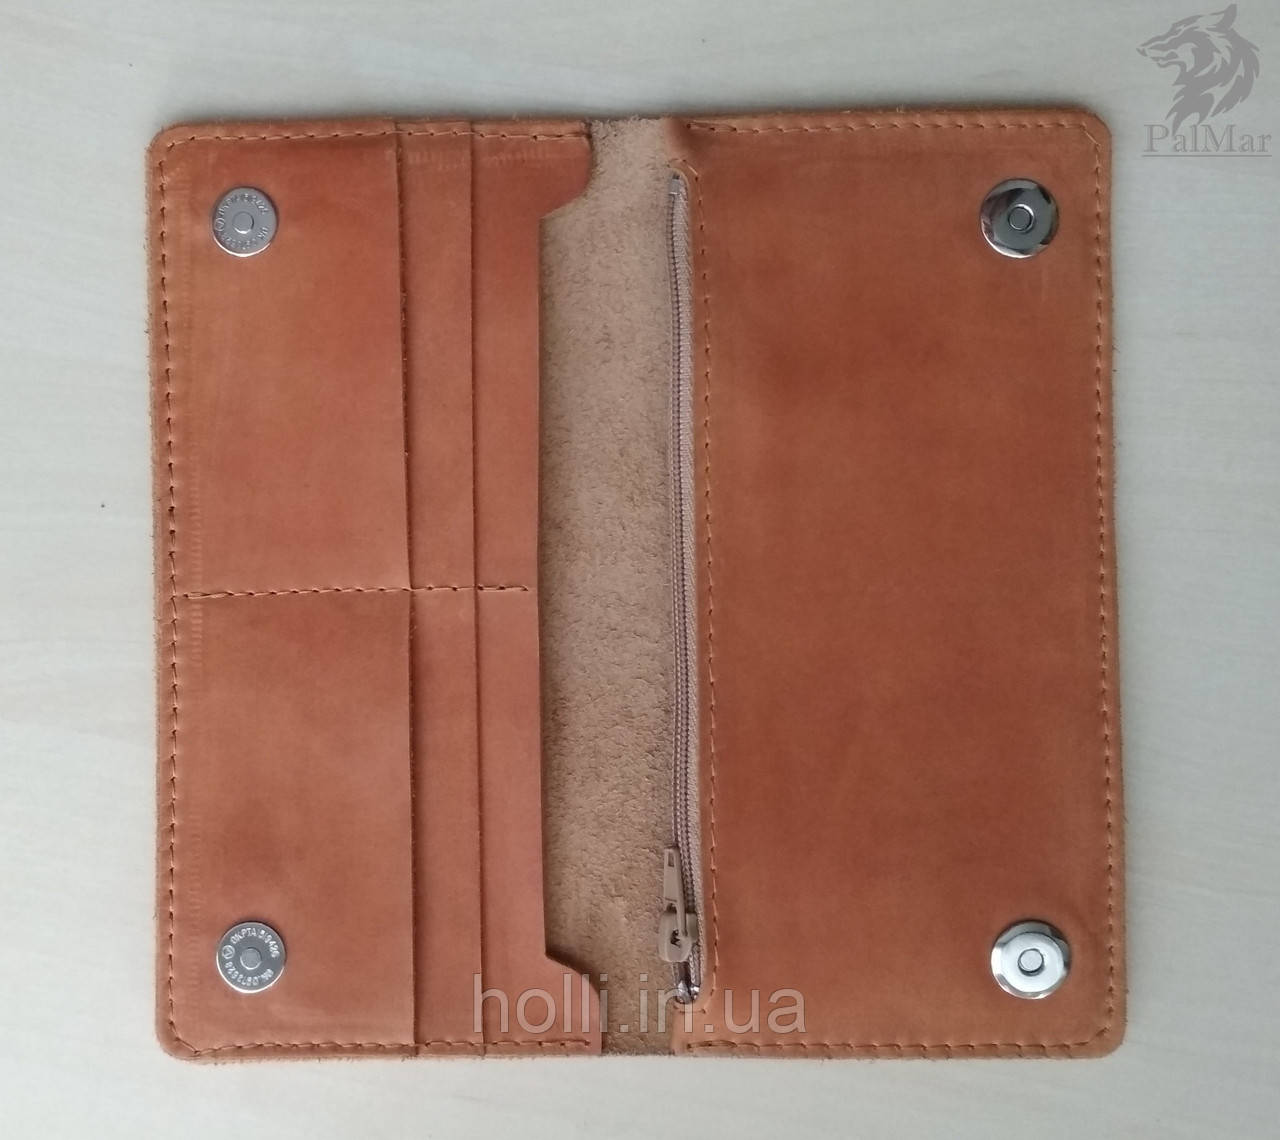 Портмоне гаманець, гаманець "Ві2" ручної роботи, натуральна шкіра, на кнопках магнітах, клатч, фото 1